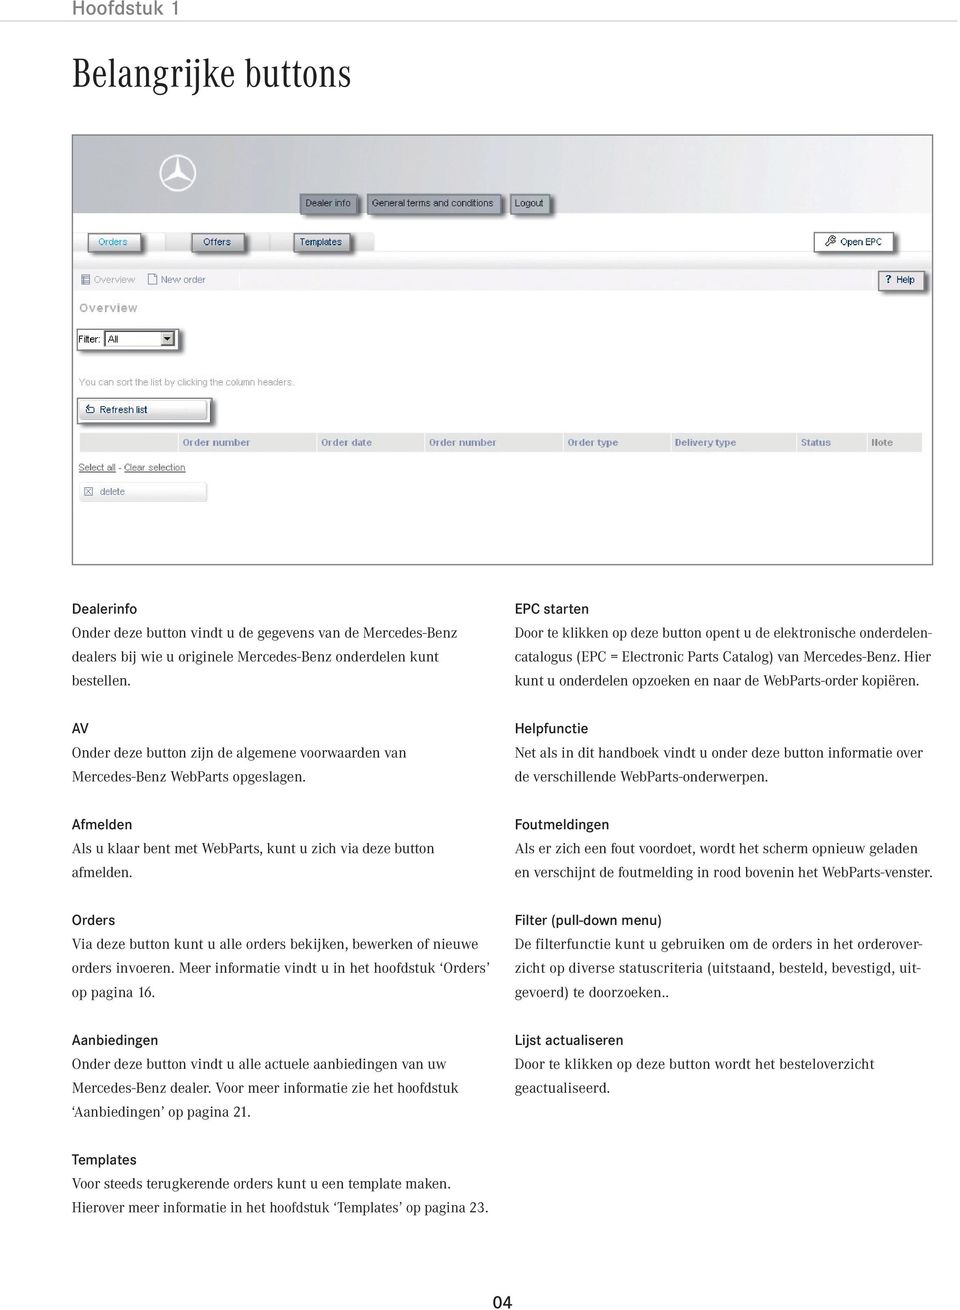 Hier kunt u onderdelen opzoeken en naar de WebParts-order kopiëren. AV Onder deze button zijn de algemene voorwaarden van Mercedes-Benz WebParts opgeslagen.